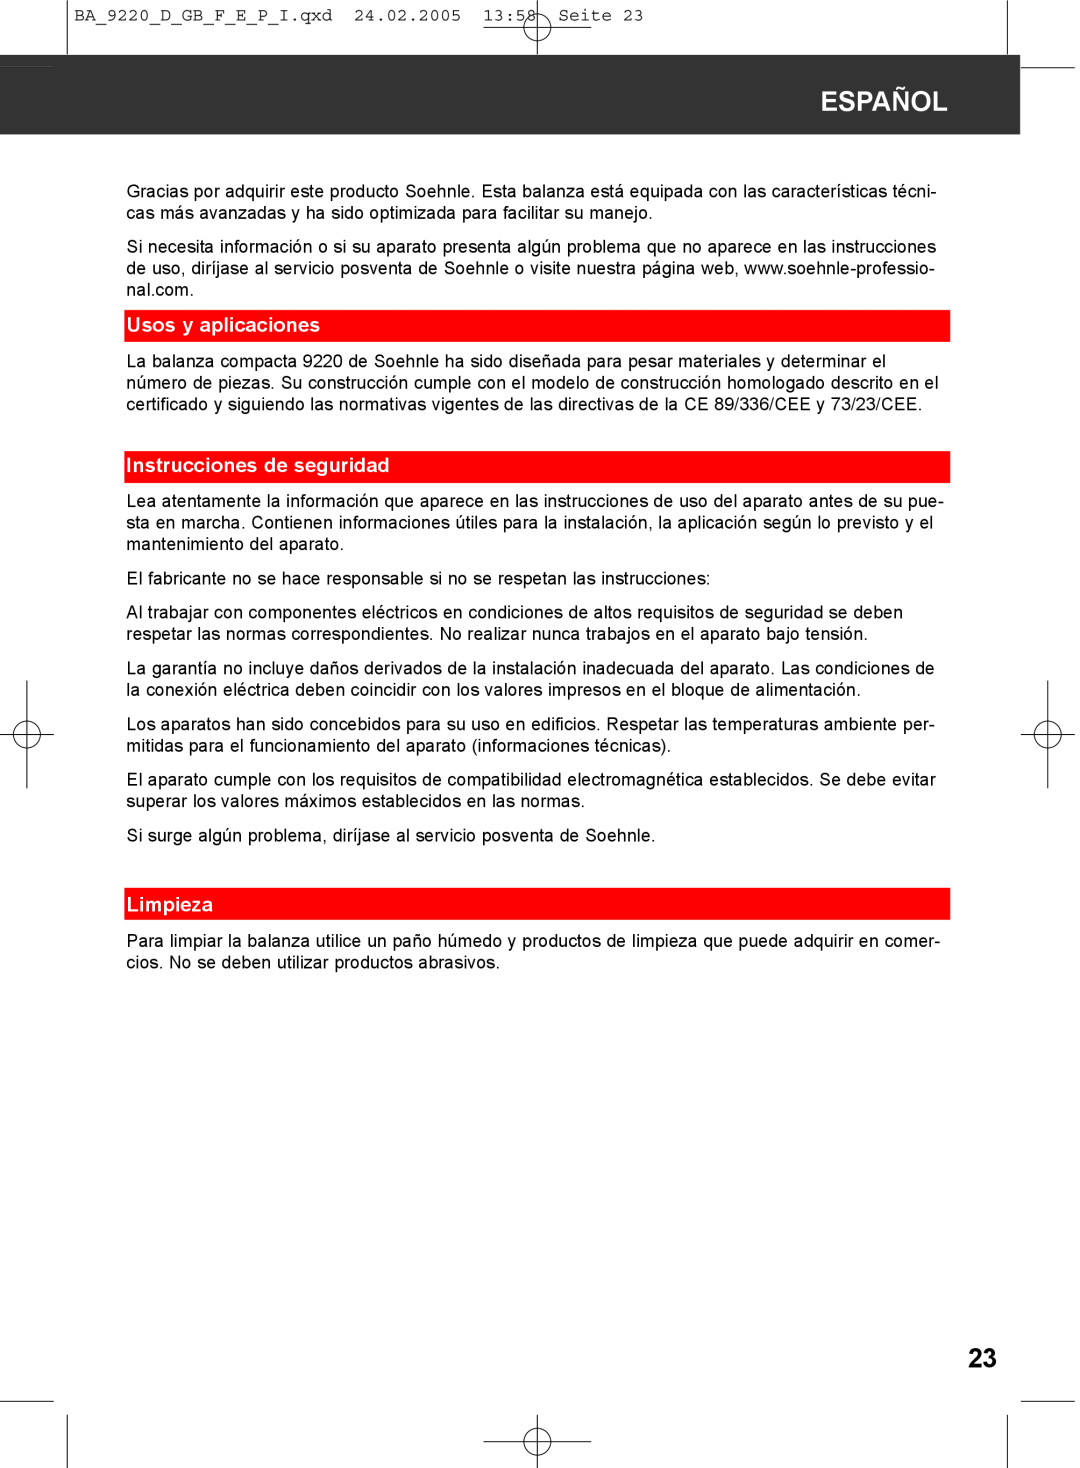 Soehnle 9220 manual Español, Usos y aplicaciones, Instrucciones de seguridad, Limpieza 